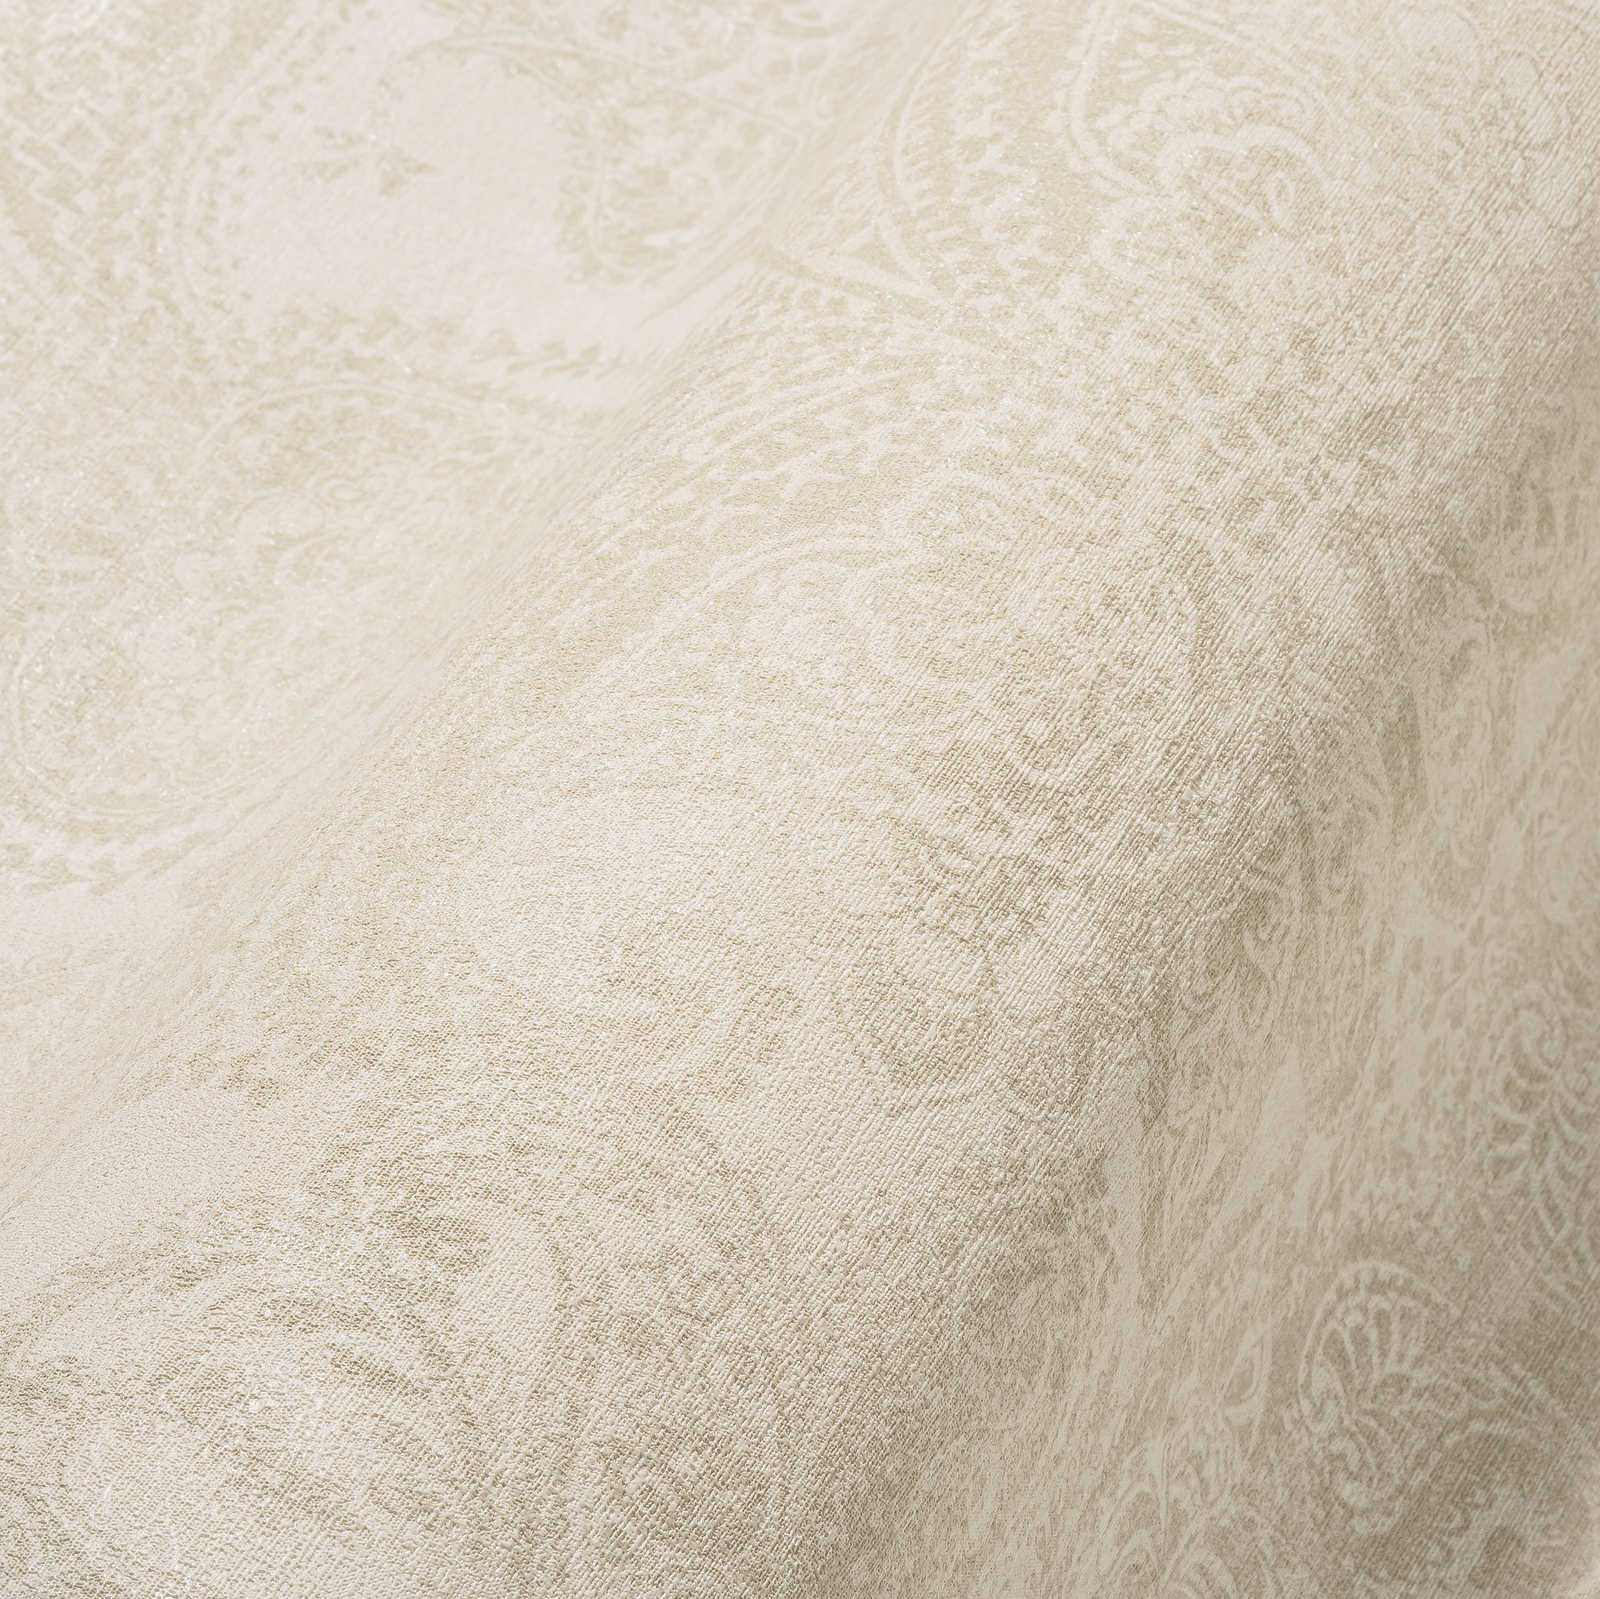             Barocktapete mit großflächigen Ornamenten – Weiß, Creme, Grau
        